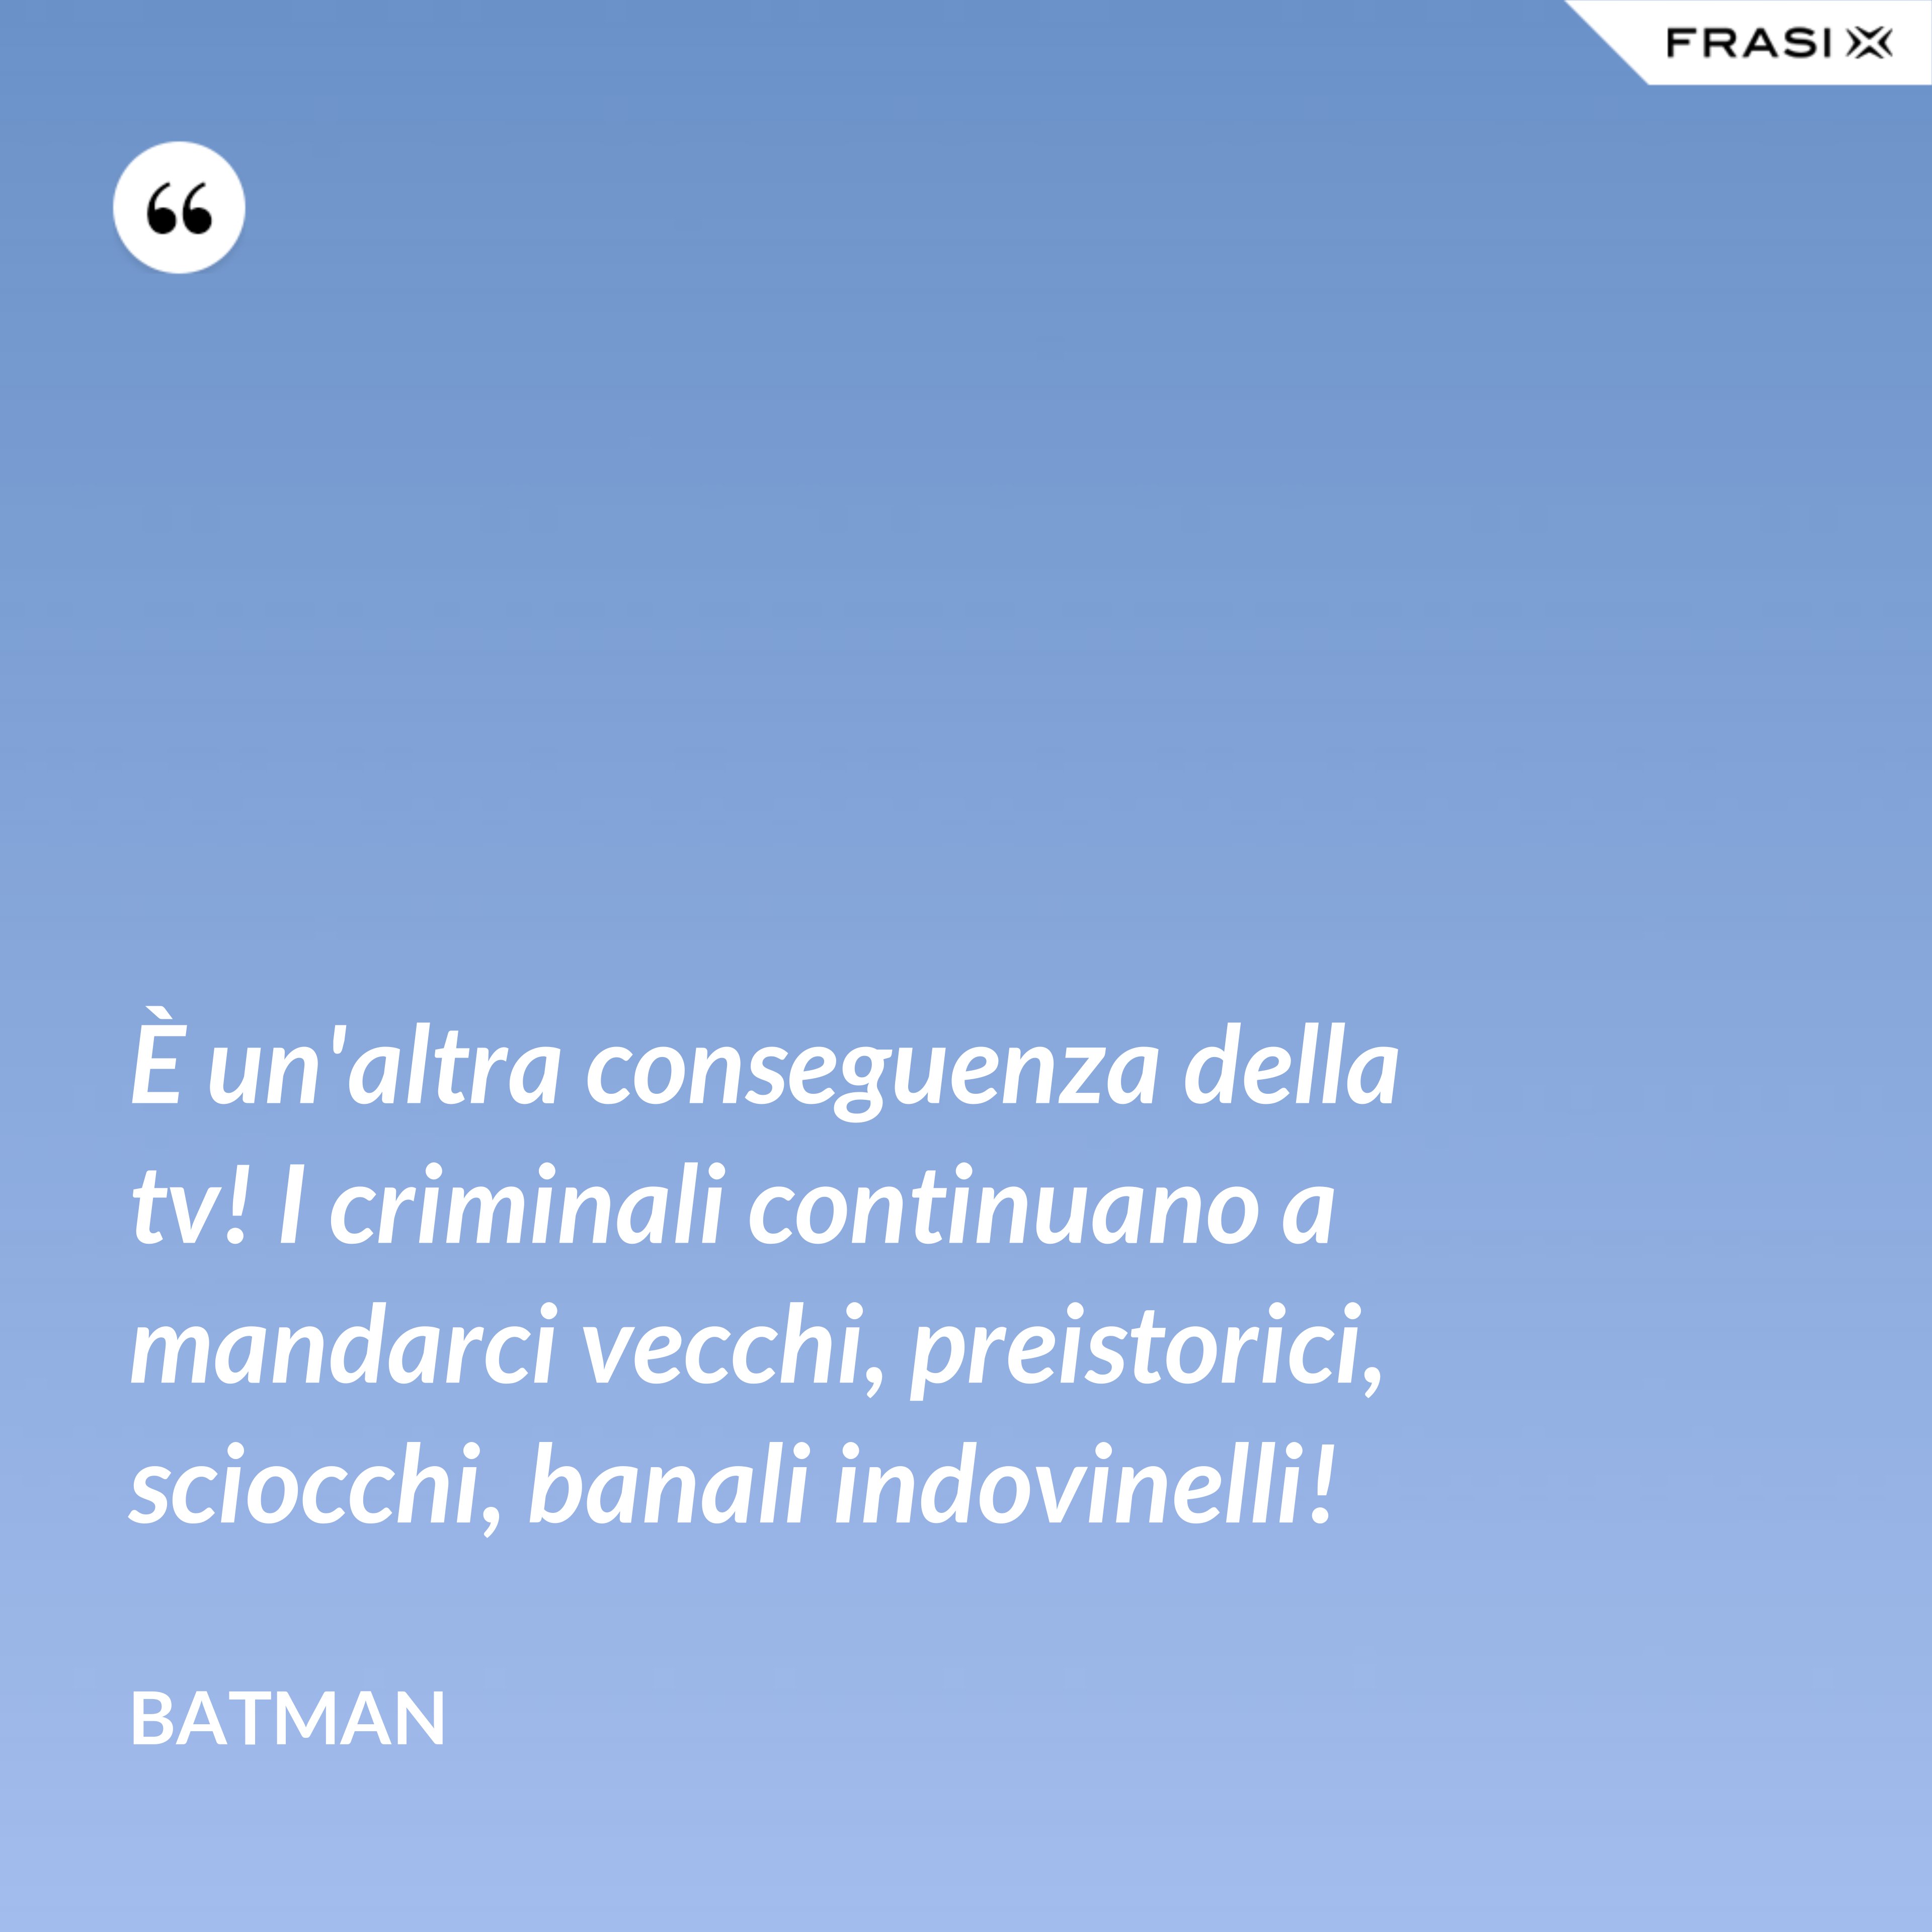 È un'altra conseguenza della tv! I criminali continuano a mandarci vecchi, preistorici, sciocchi, banali indovinelli! - Batman